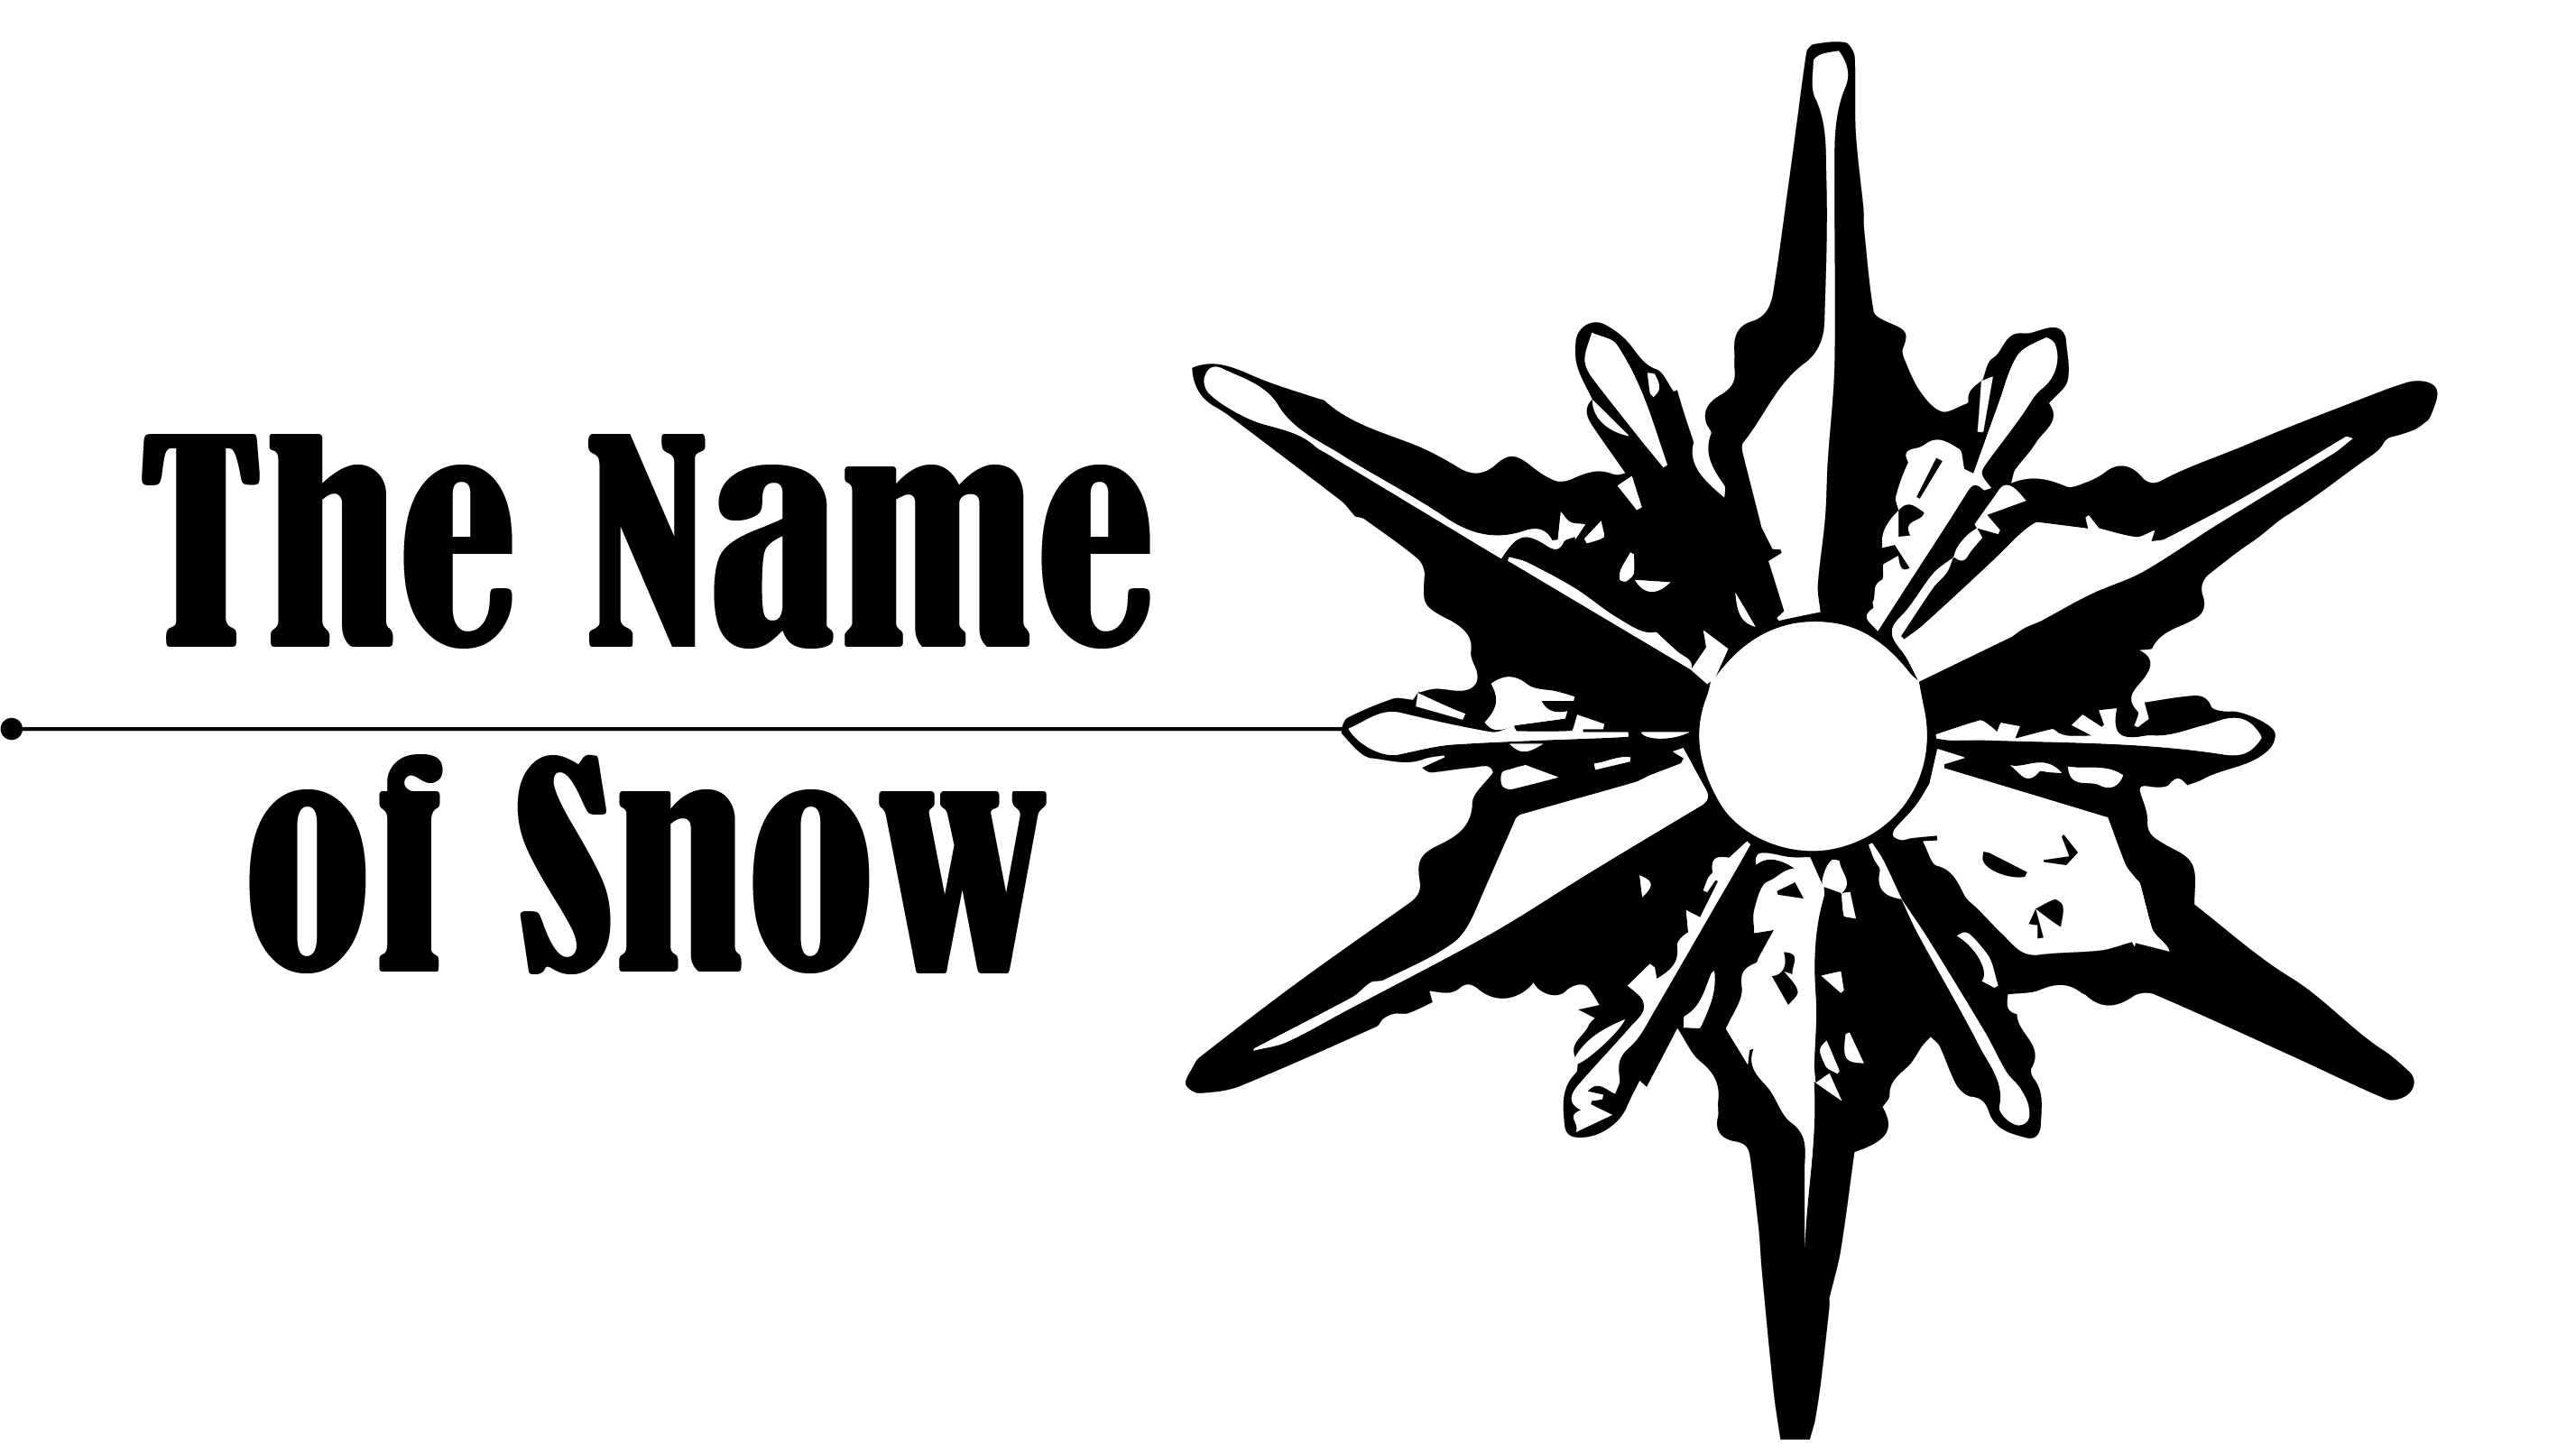 ktmeaton/The-Name-Of-Snow